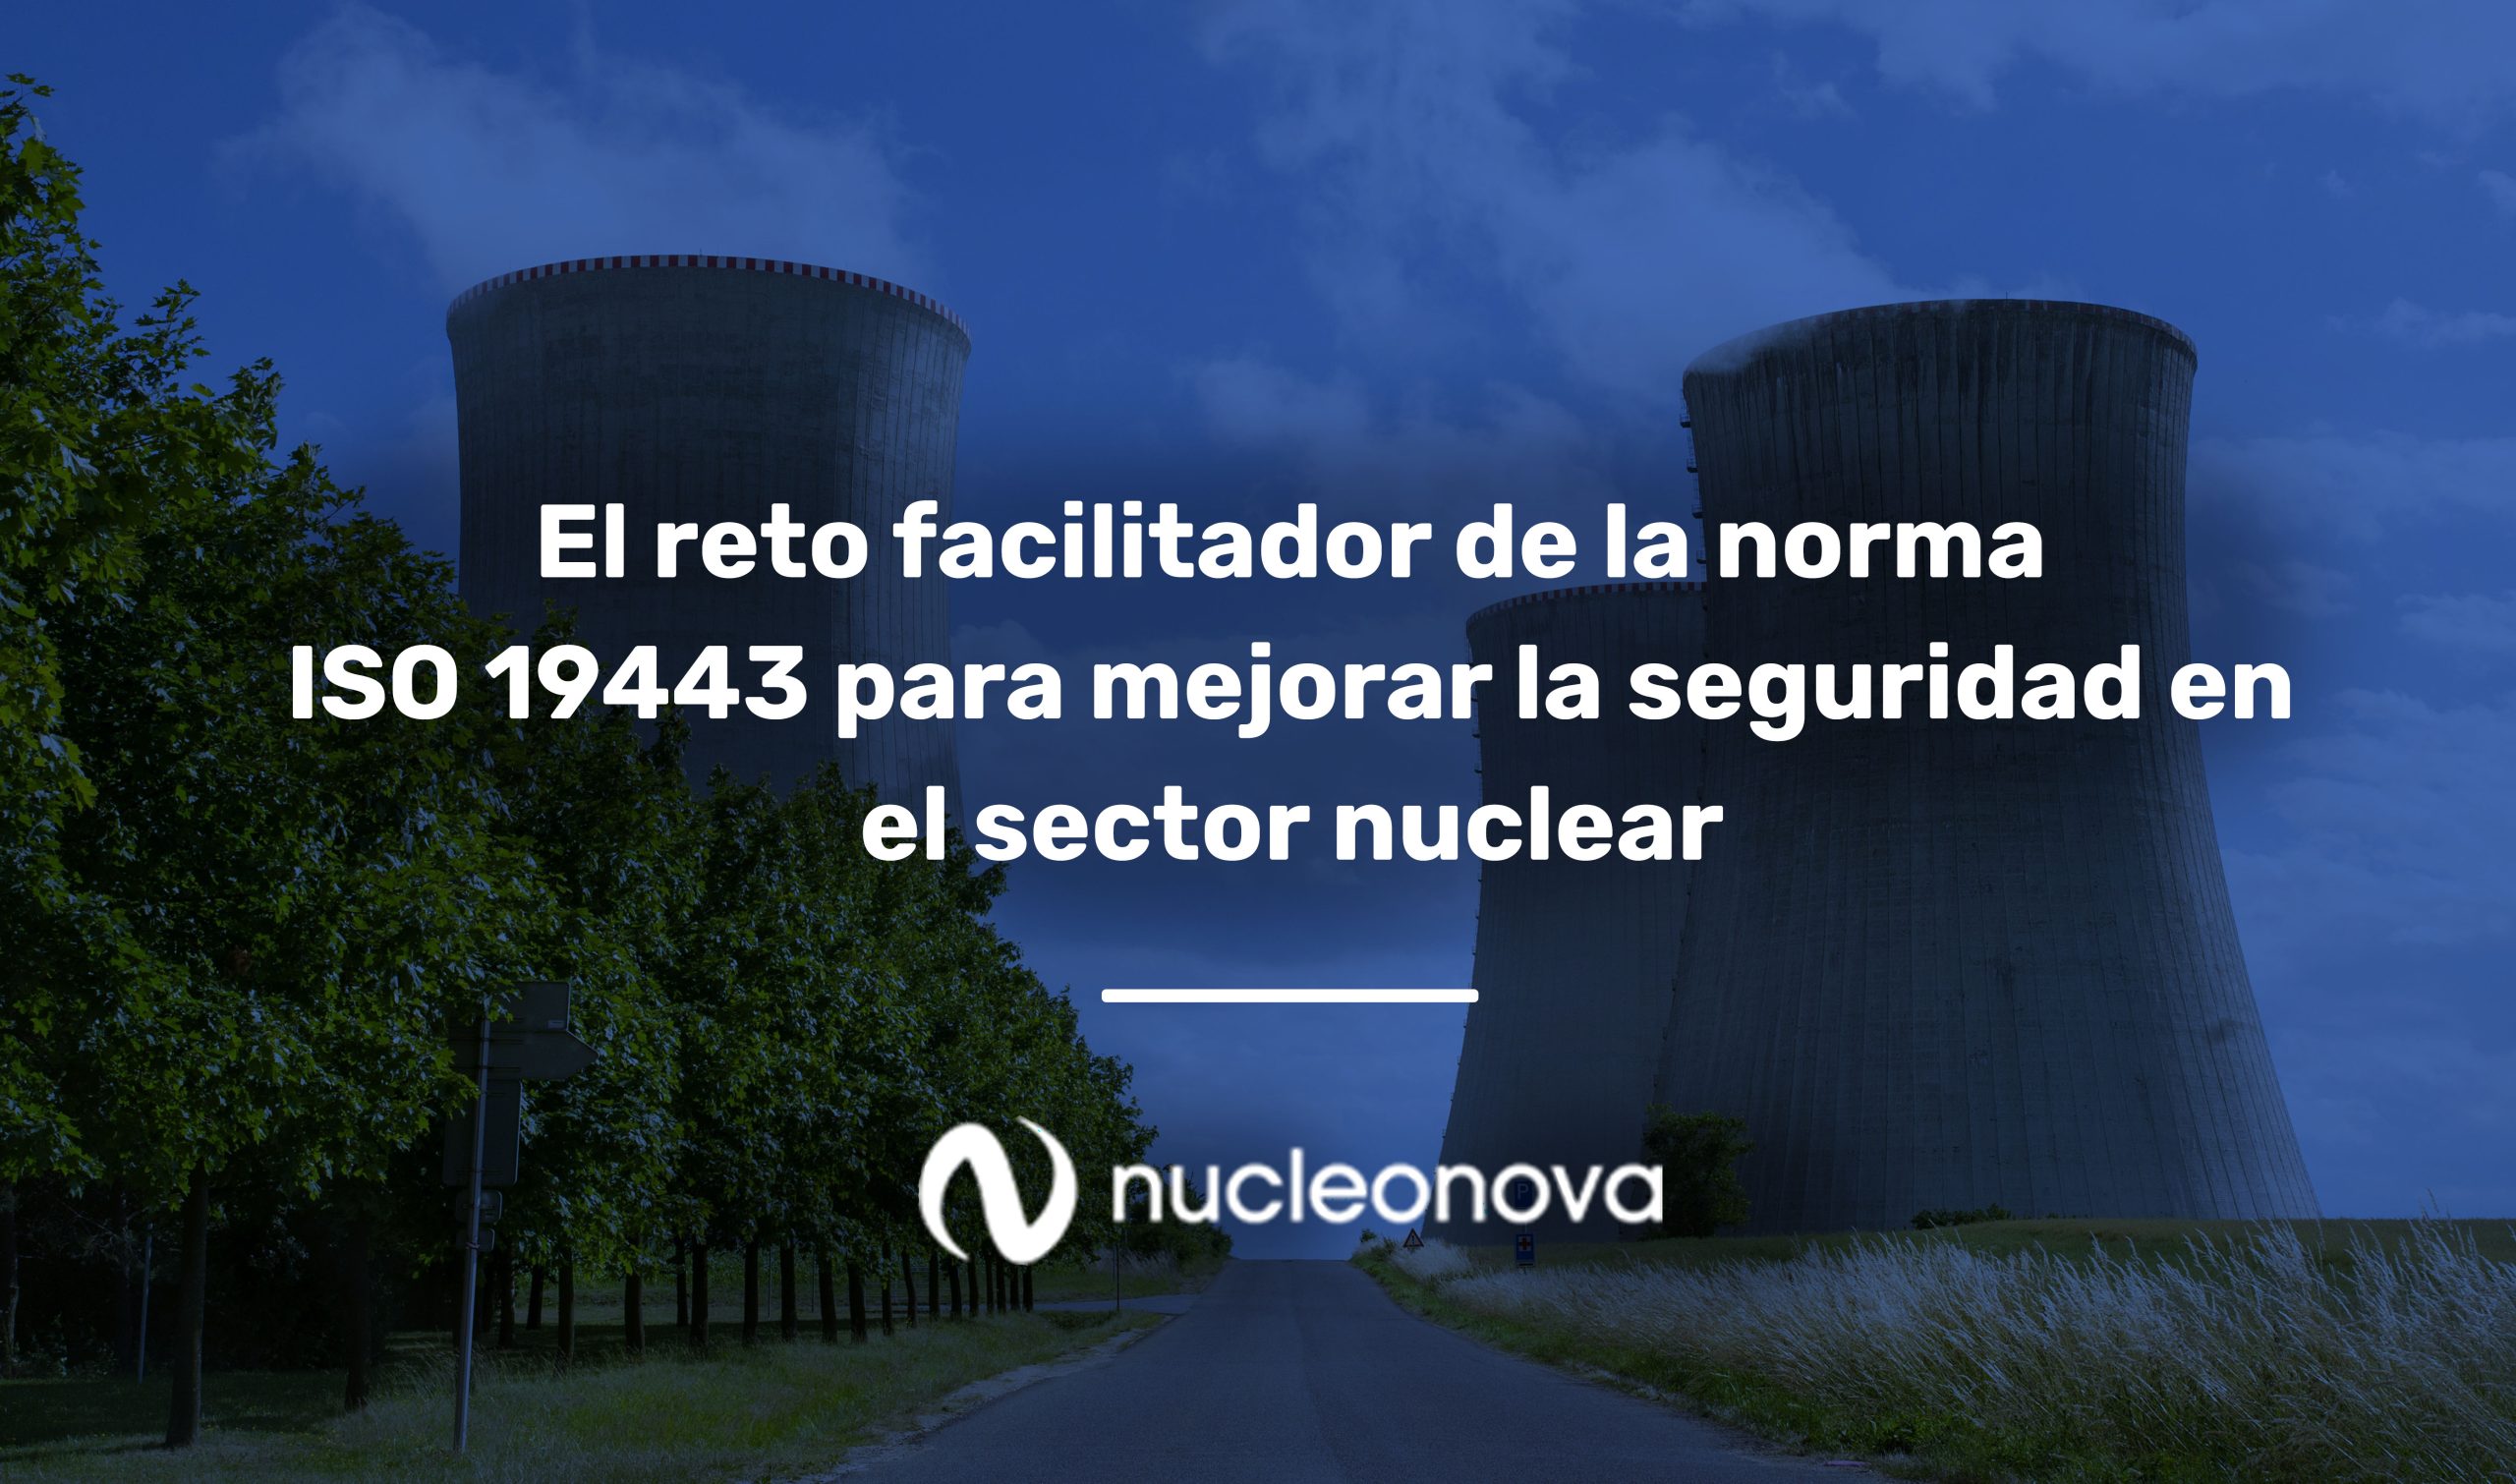 El reto facilitador de la norma ISO 19443 para mejorar la seguridad en el sector nuclear